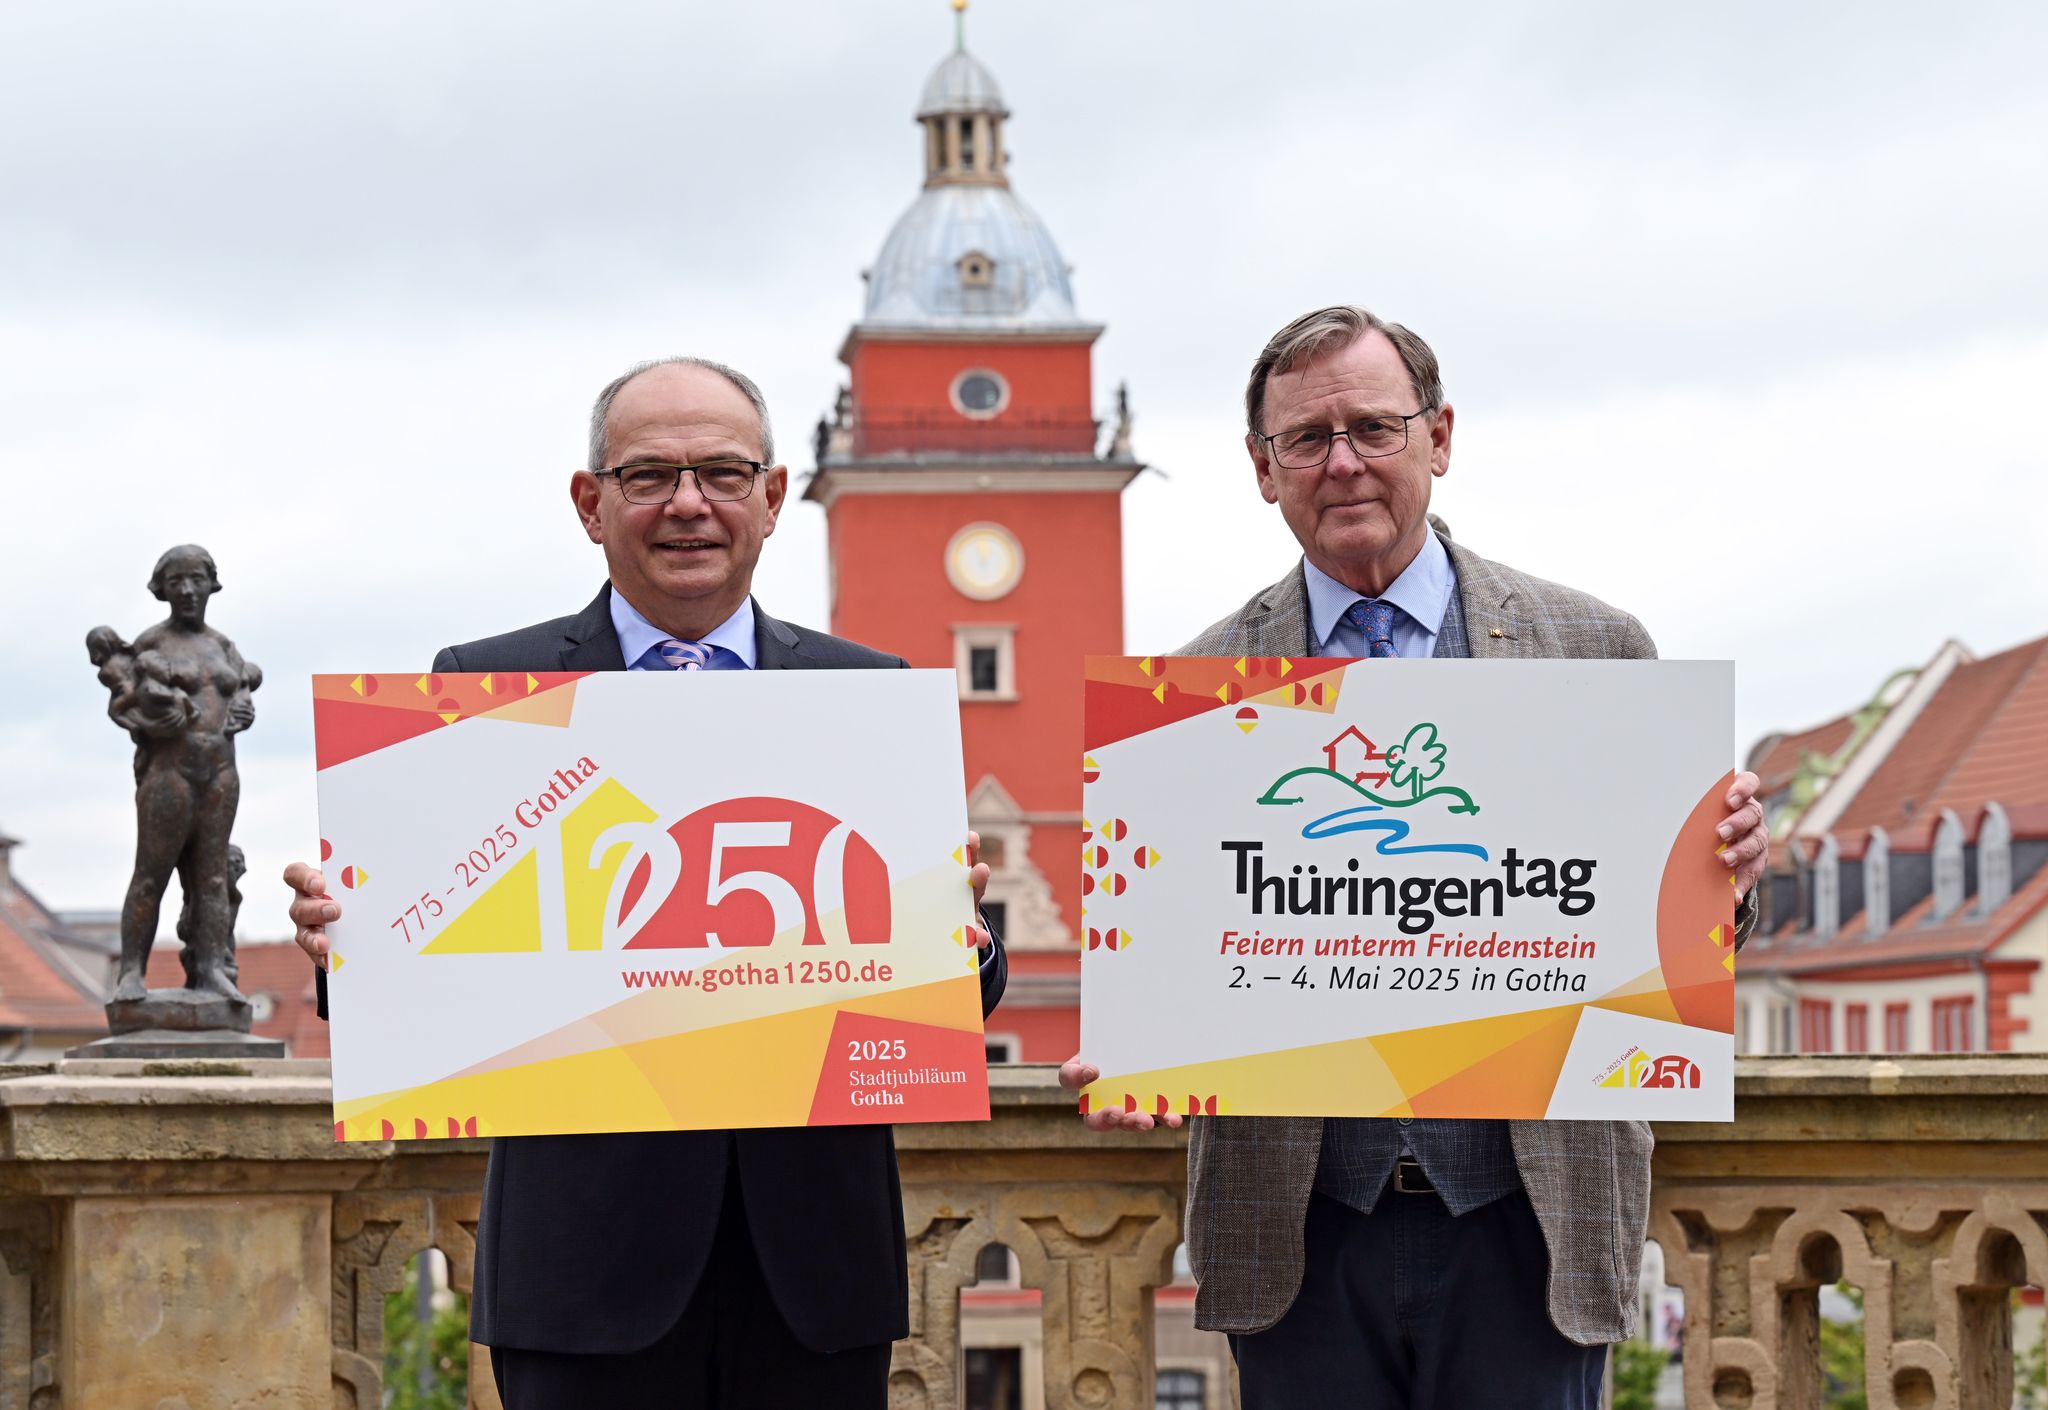 Vorbereitung des Thringentag 2025 in Gotha 
Gotha bereitet sich auf den Thringentag 2025 vor. Ministerprsident Bodo Ramelow (r.) und OB Knut Kreuch (SPD) mit den Logos von Landesfest und Stadtjubilum vor dem Historischen Rathaus. Martin Schutt/dpa